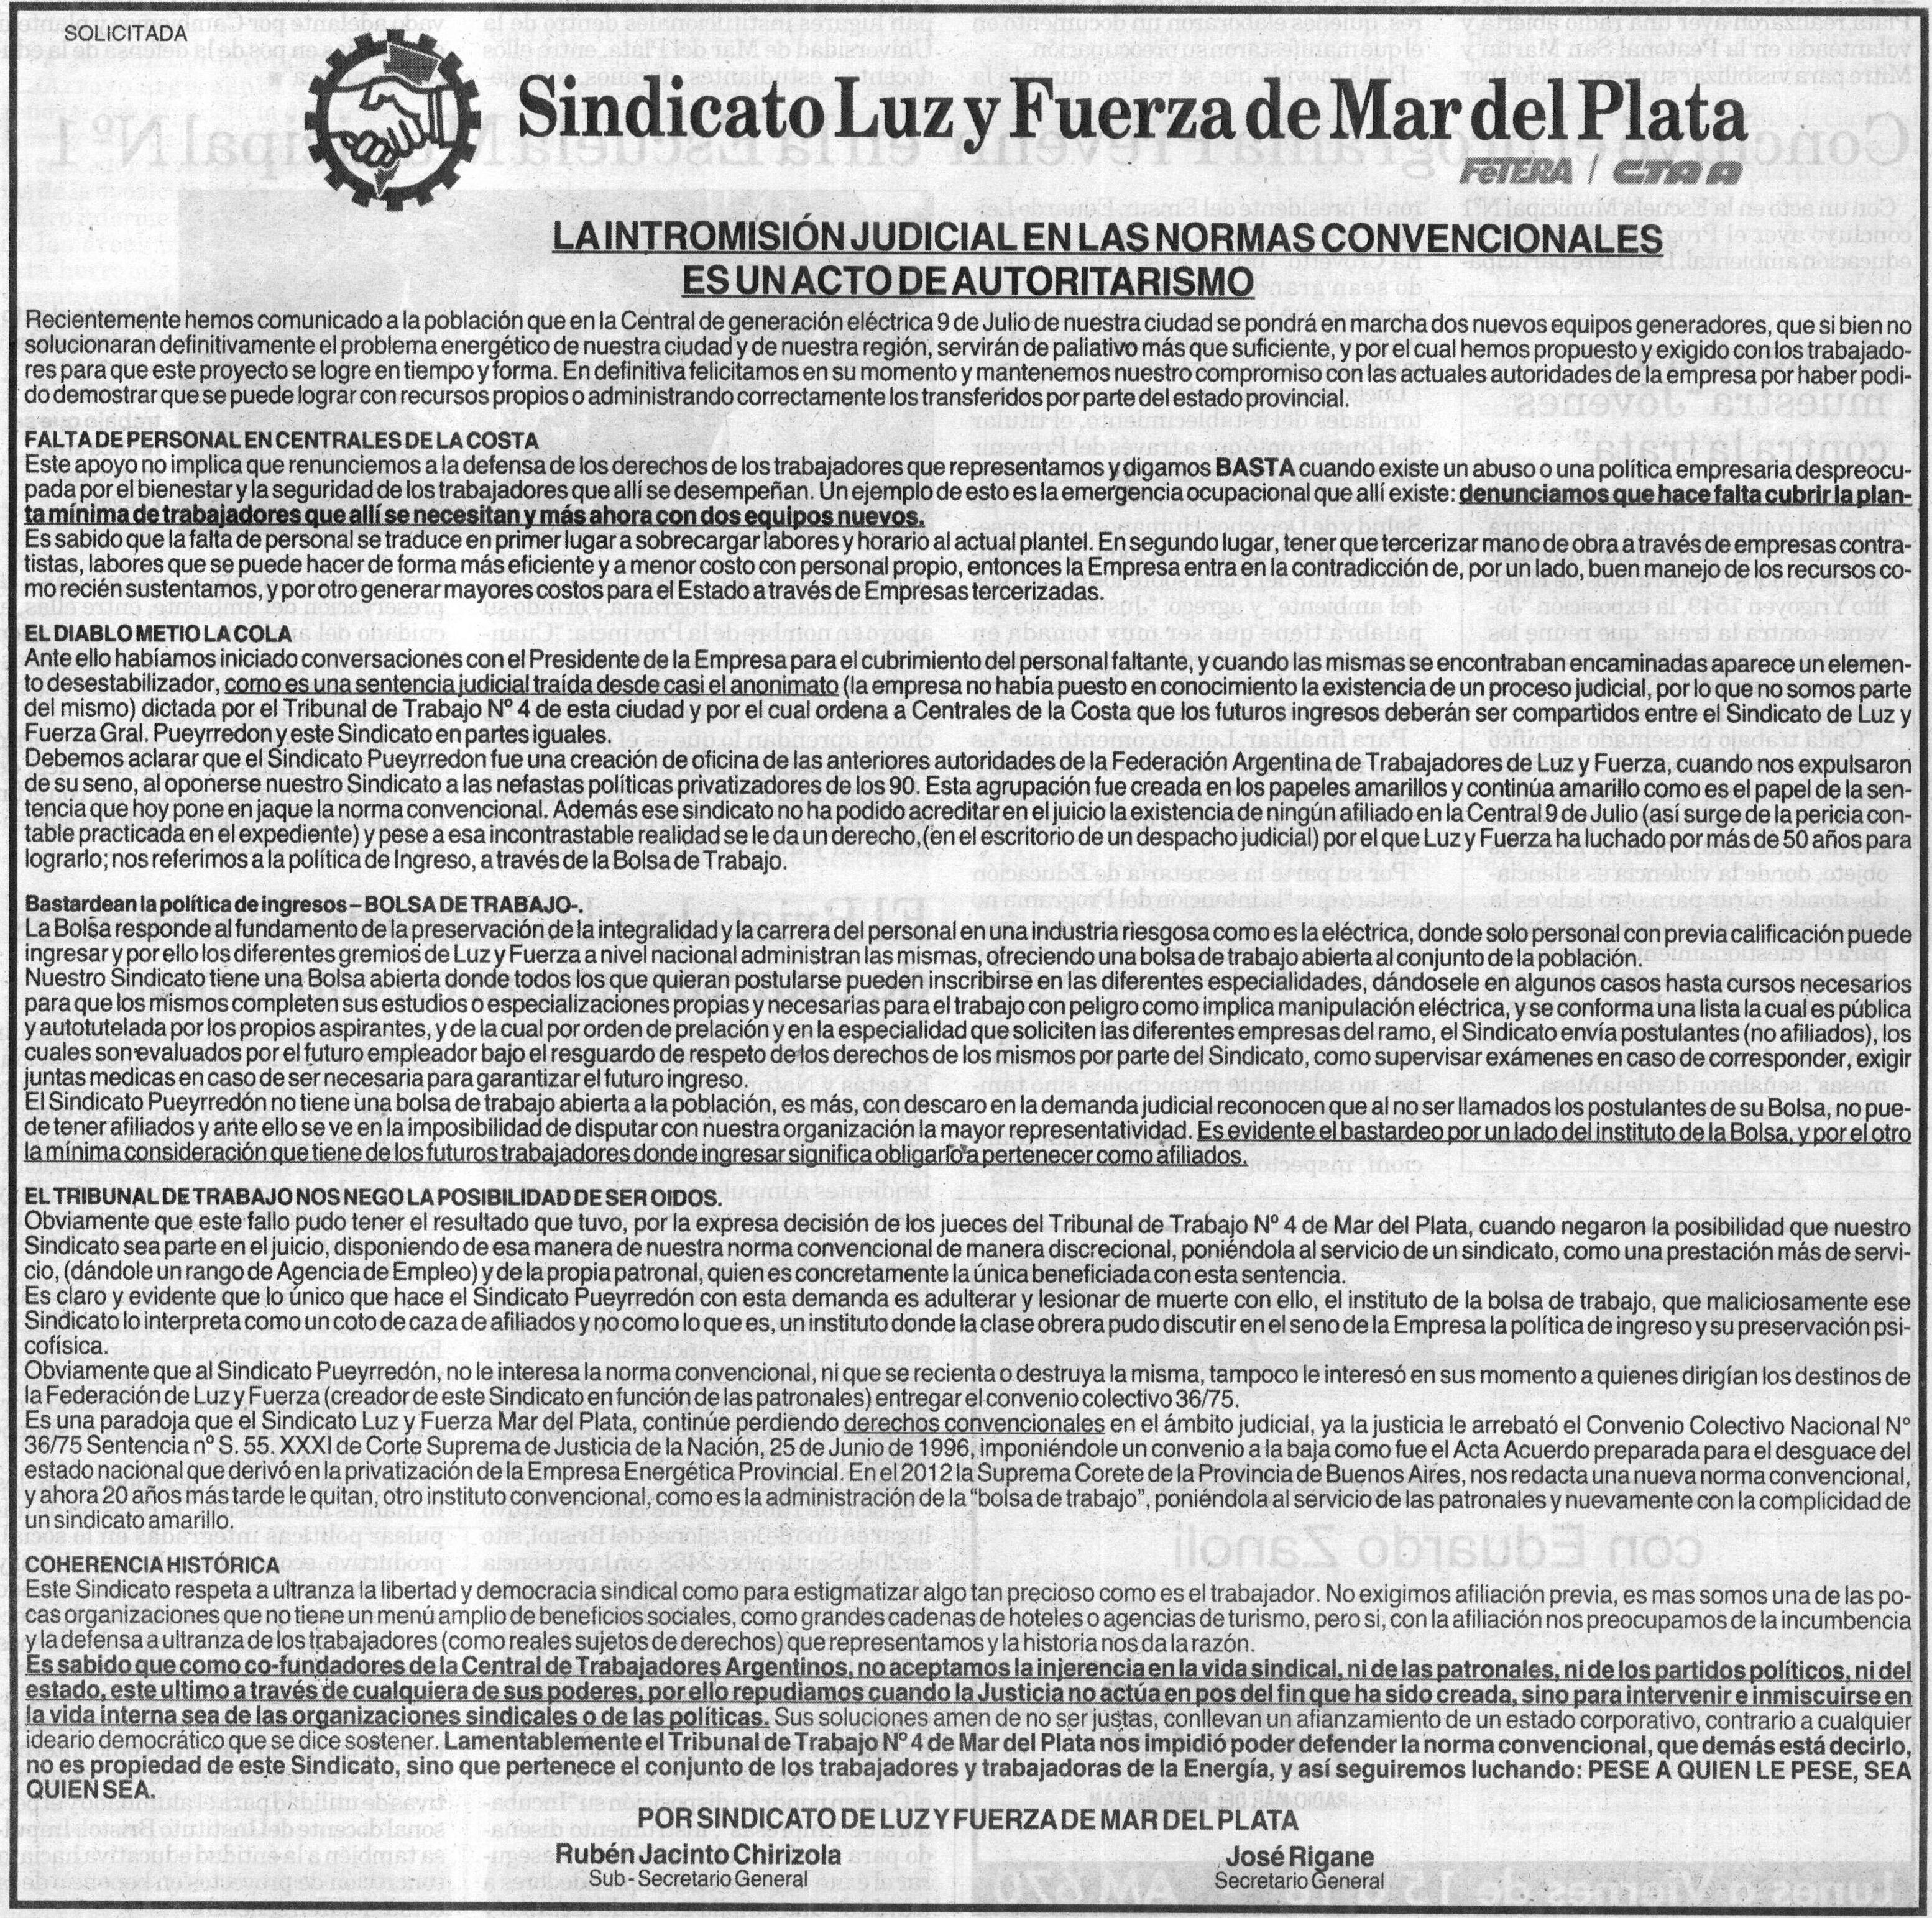 Solicitada en Diario La Capital de Mar del Plata del 1-12-16 contra la Intromisión Judicial en las normas convencionales